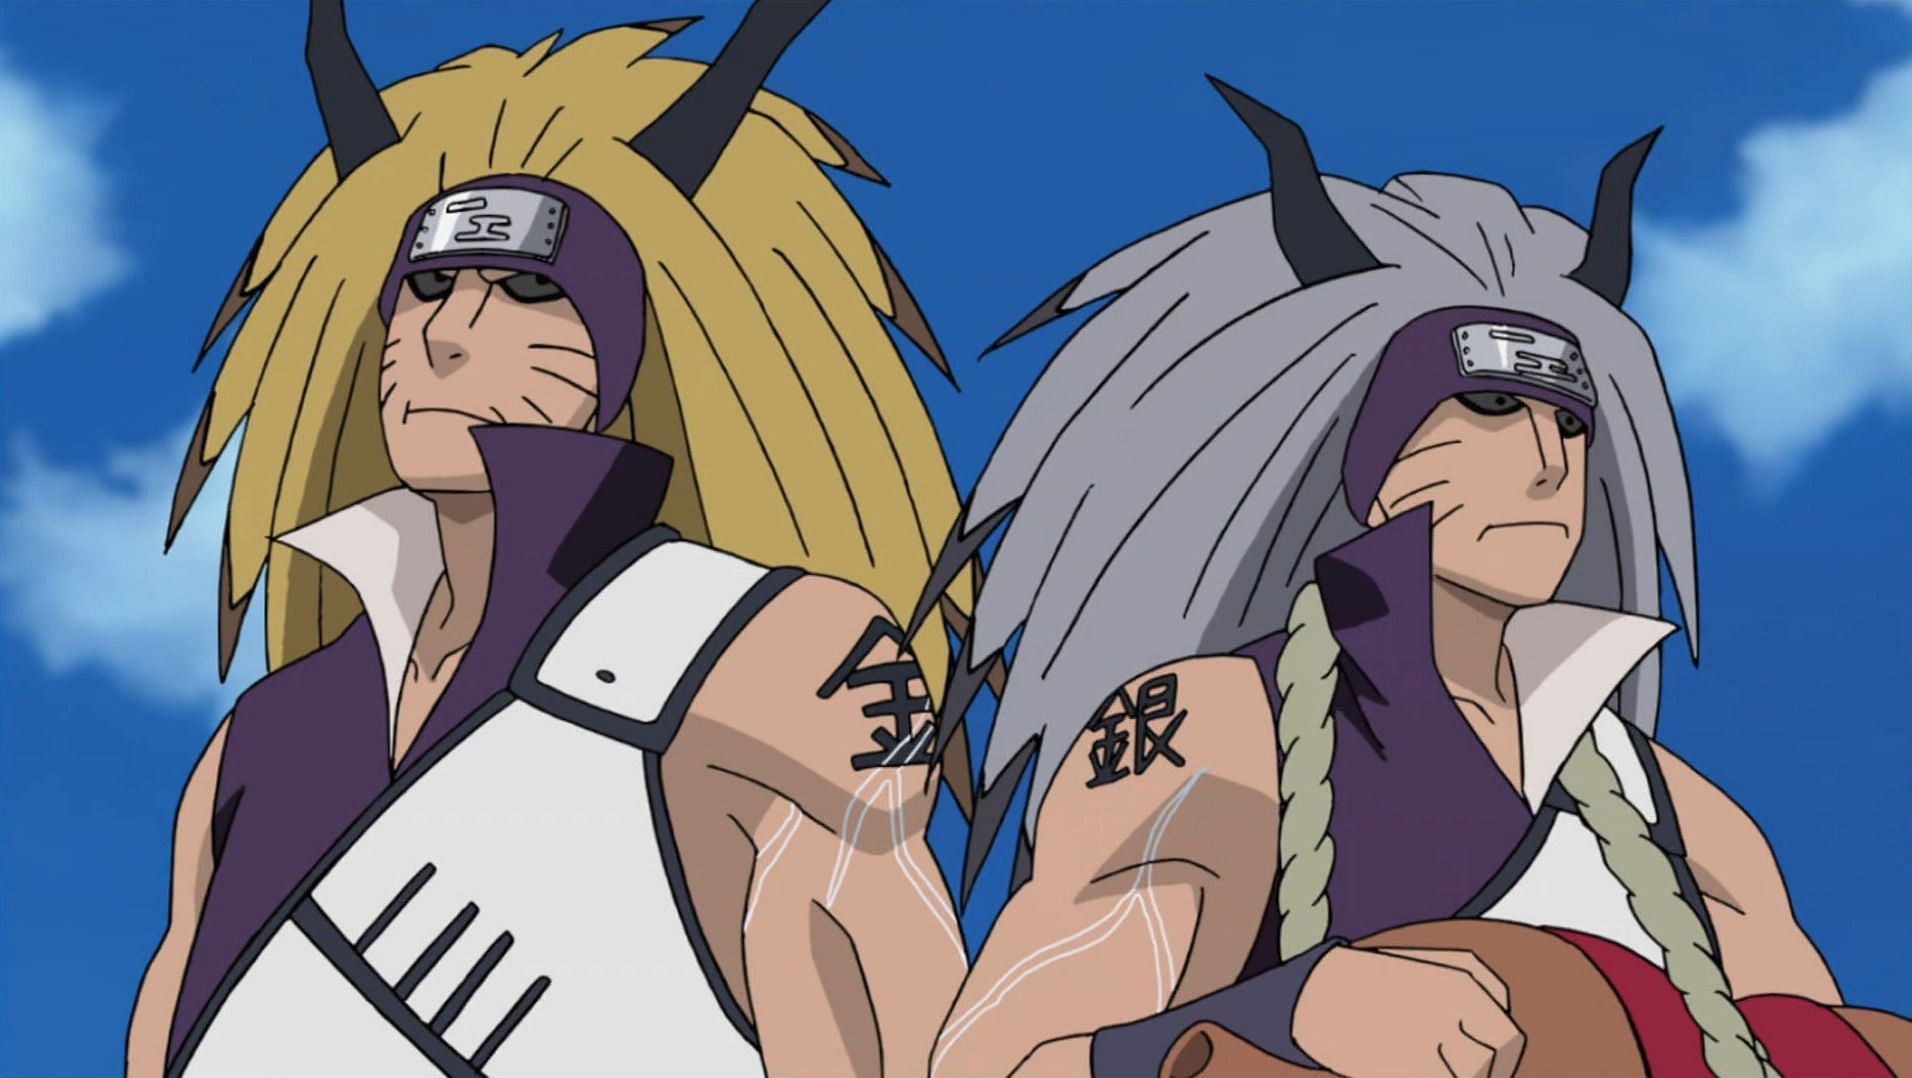 Kinkaku and Ginkaku as seen in the Naruto anime (Image via Studio Pierrot)